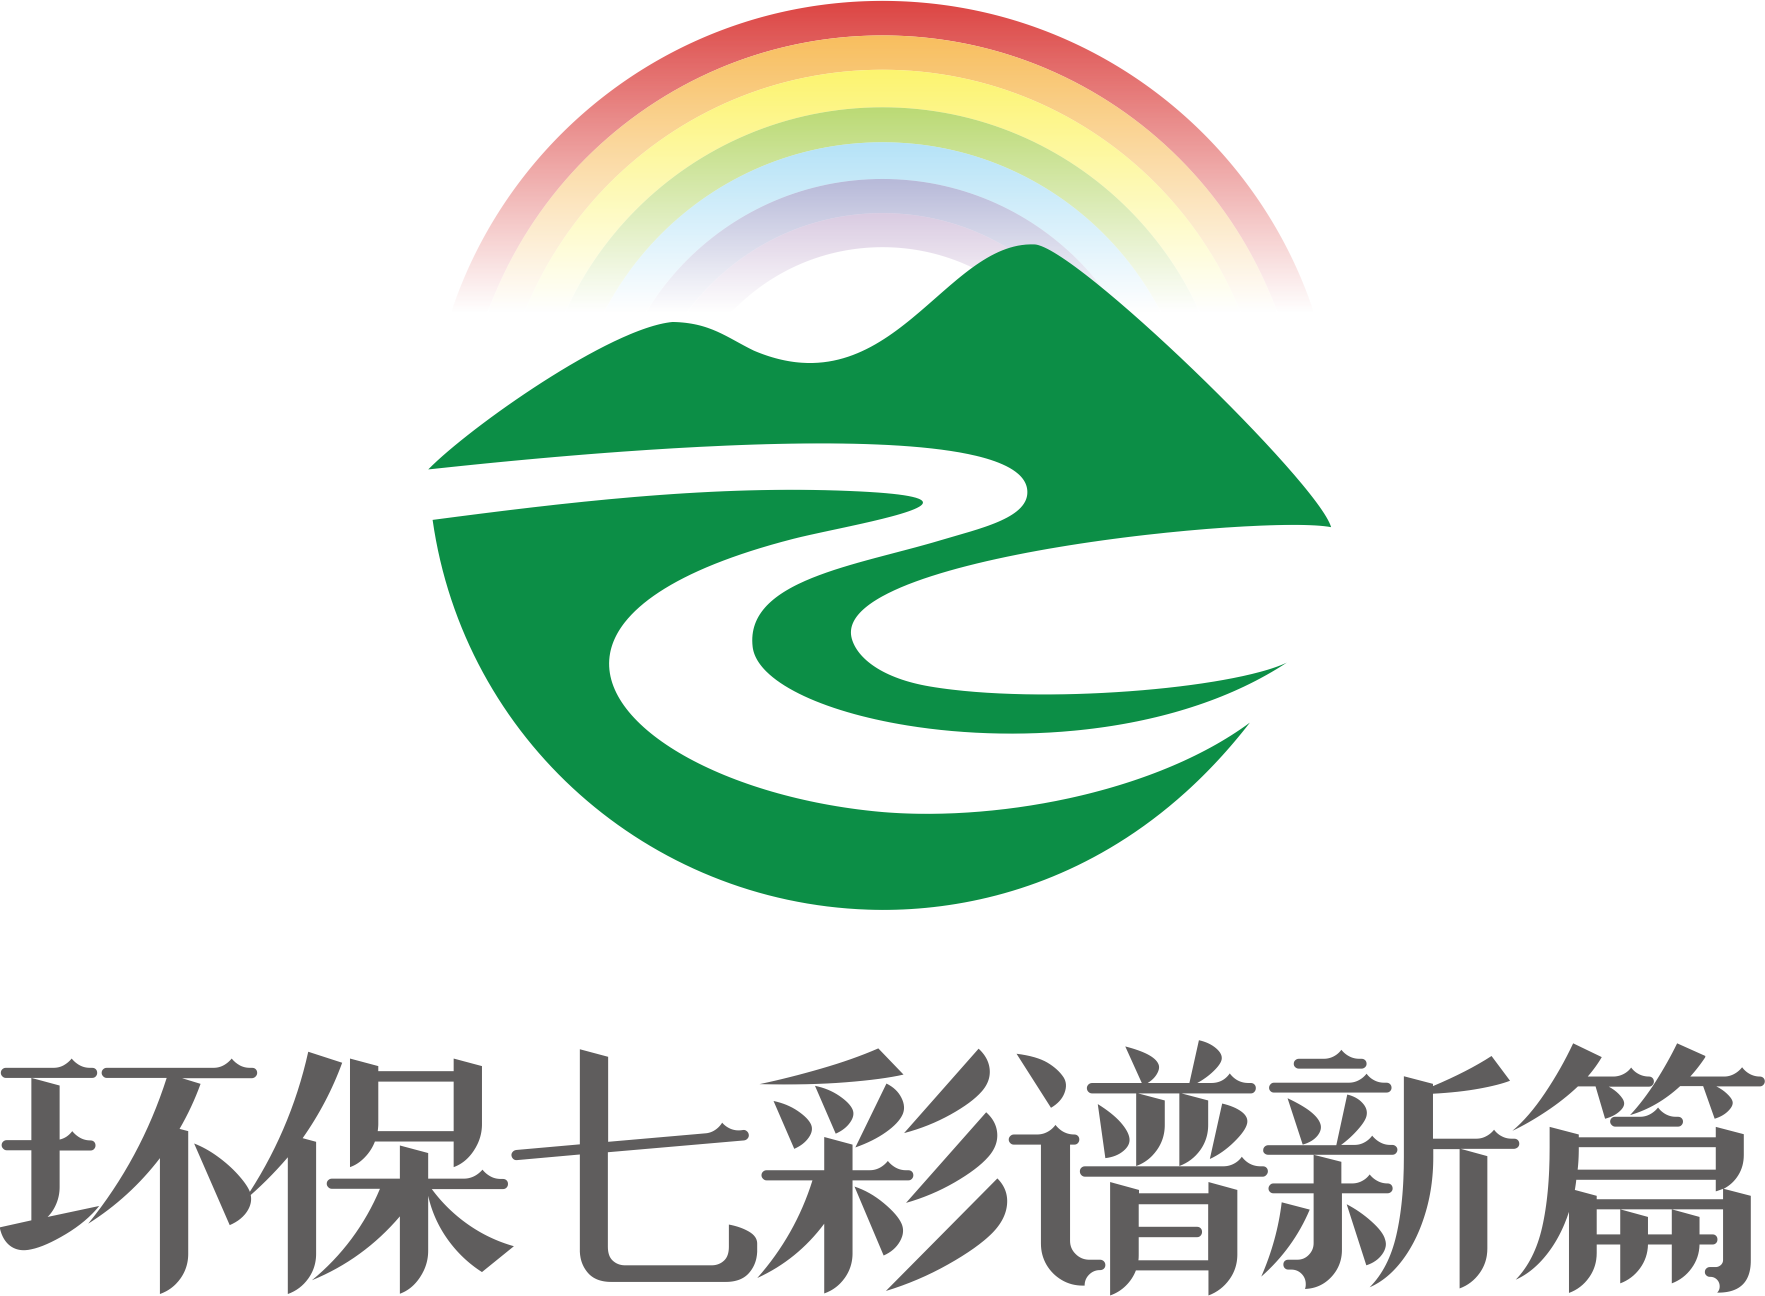 1. 黨建品牌Logo.png